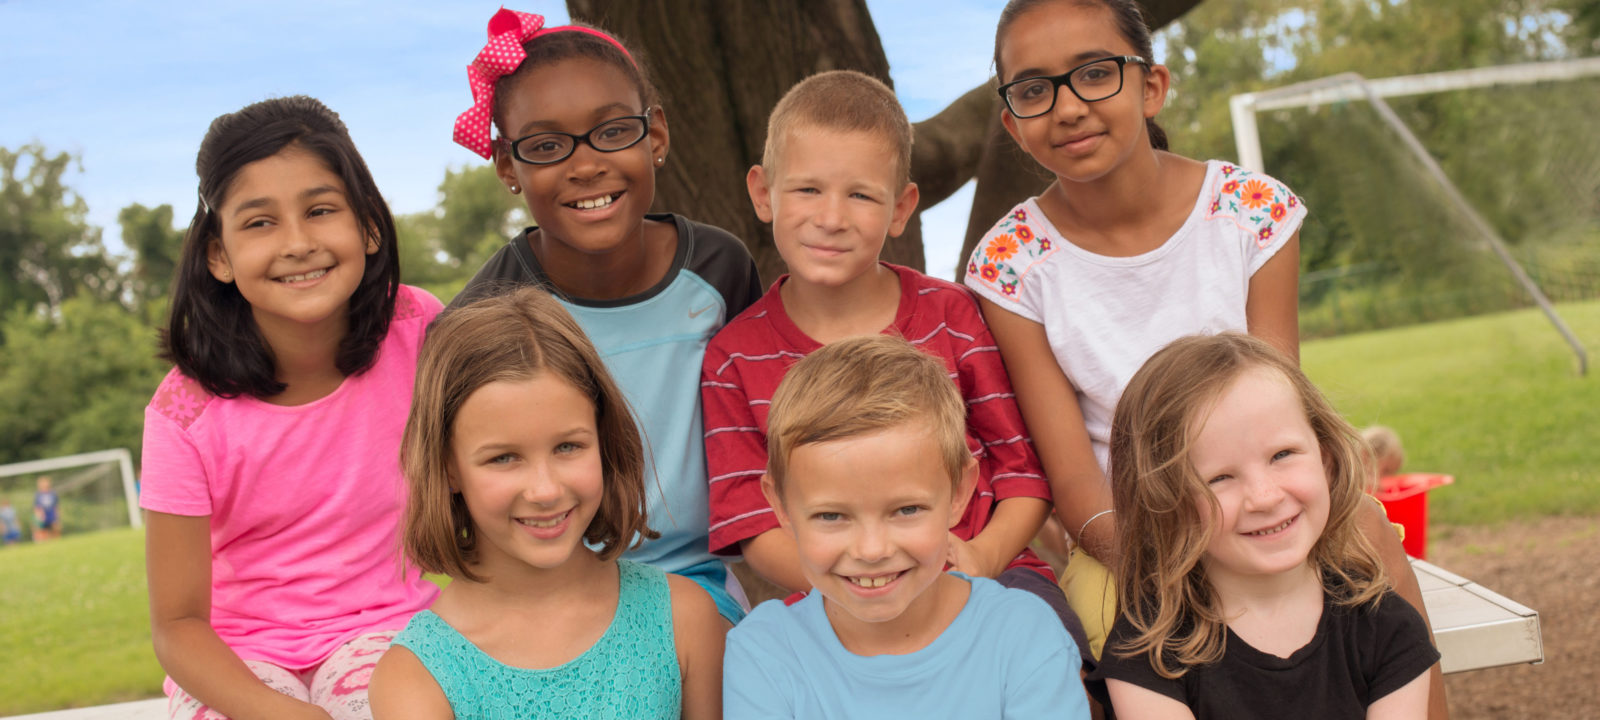 Xplor School Age Care in the Dallas, Fort Worth, Austin & Houston Texas Areas